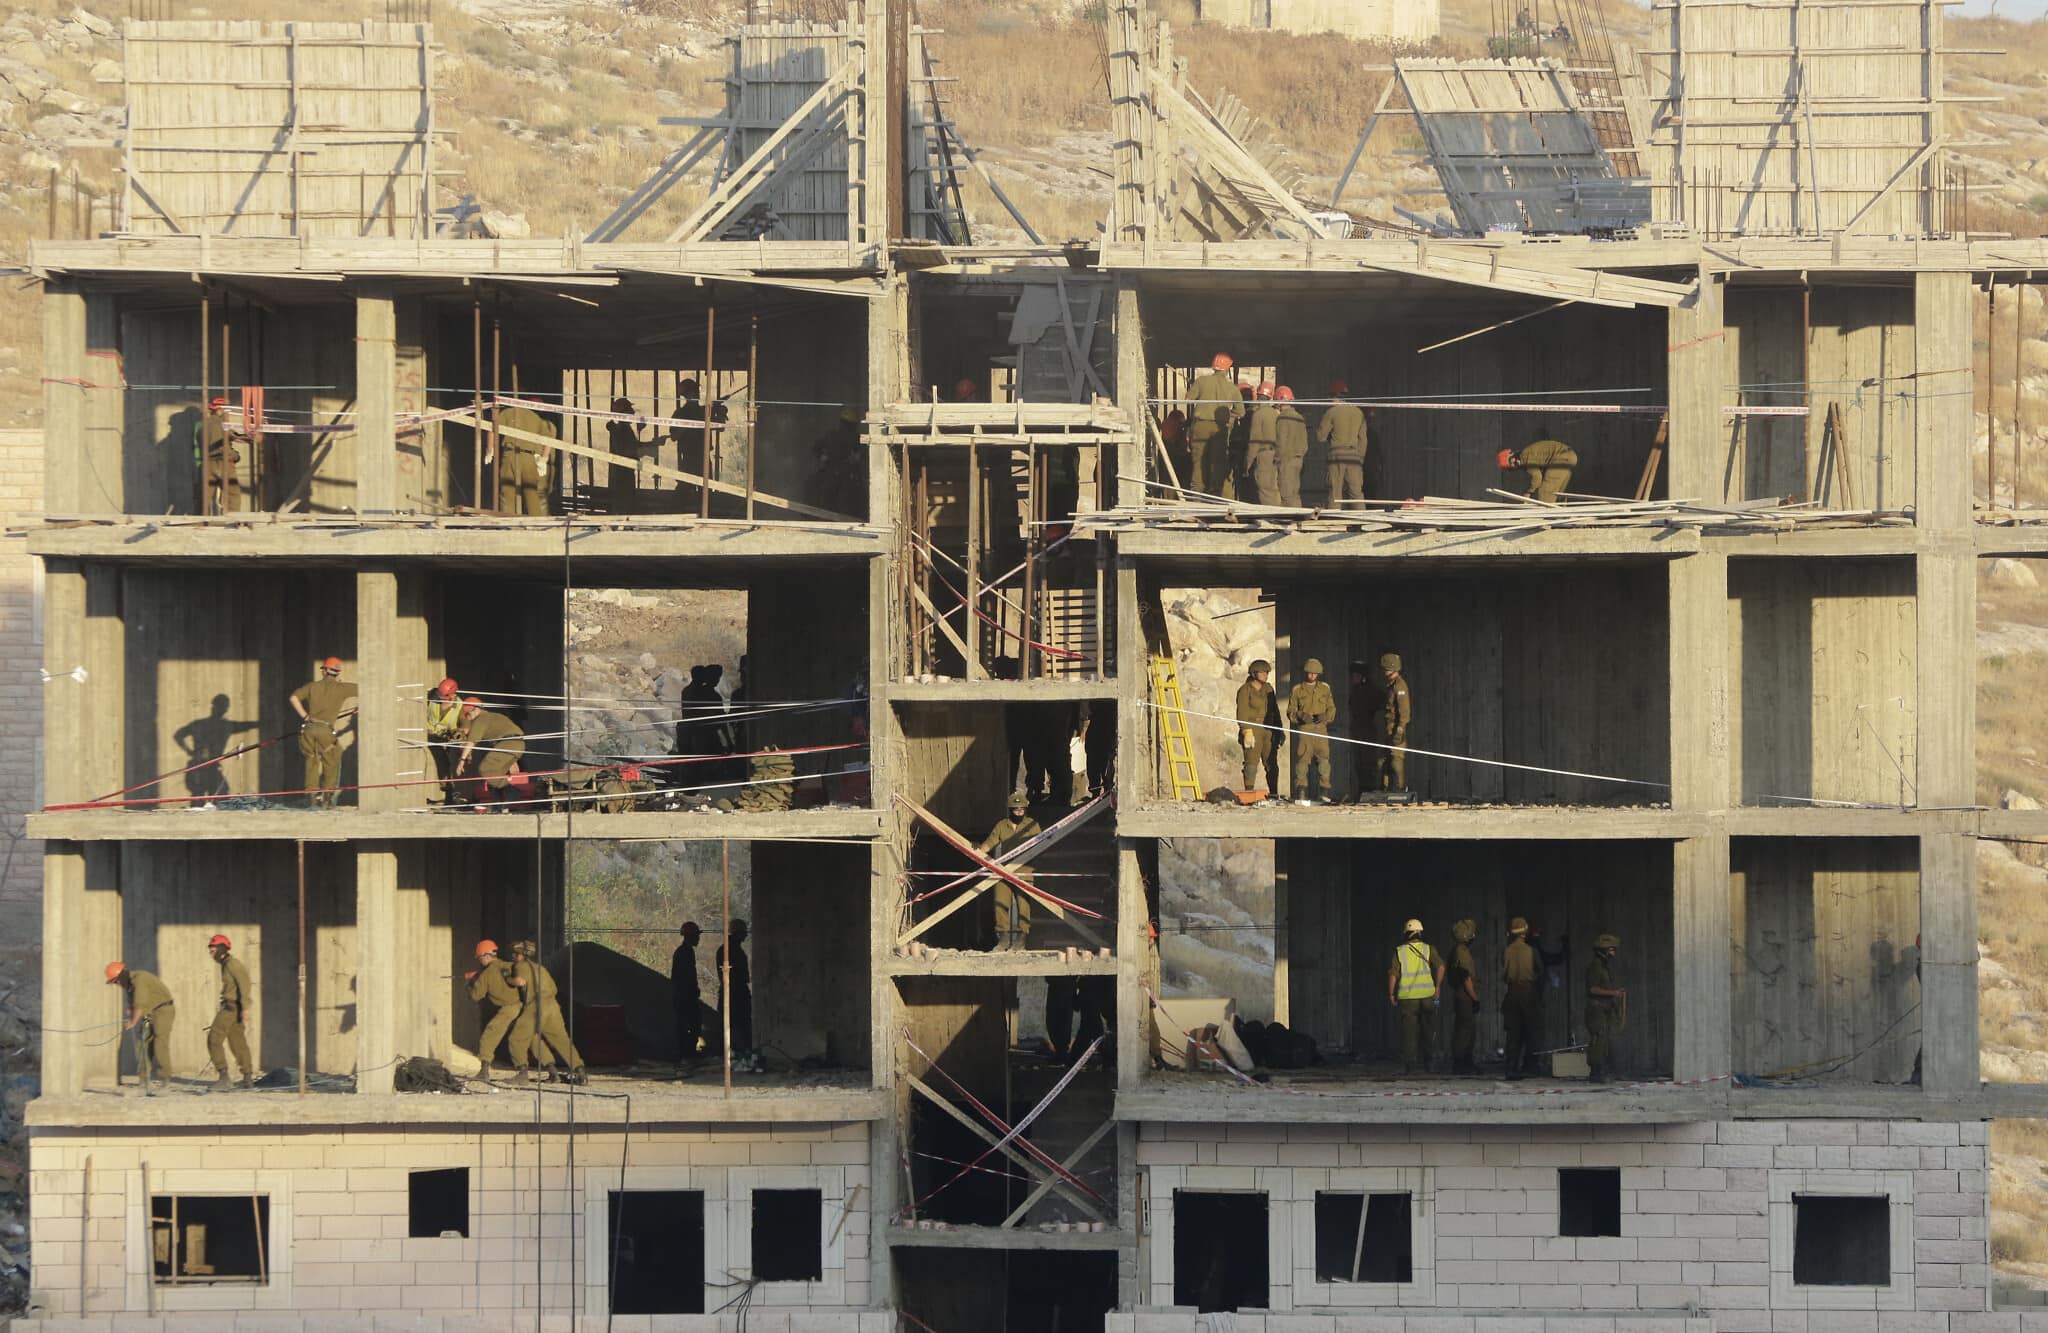 ארכיון, הריסת בתי פלסטינים במזרח ירושלים, יולי 2019 (צילום: AP Photo/Mahmoud Illean)